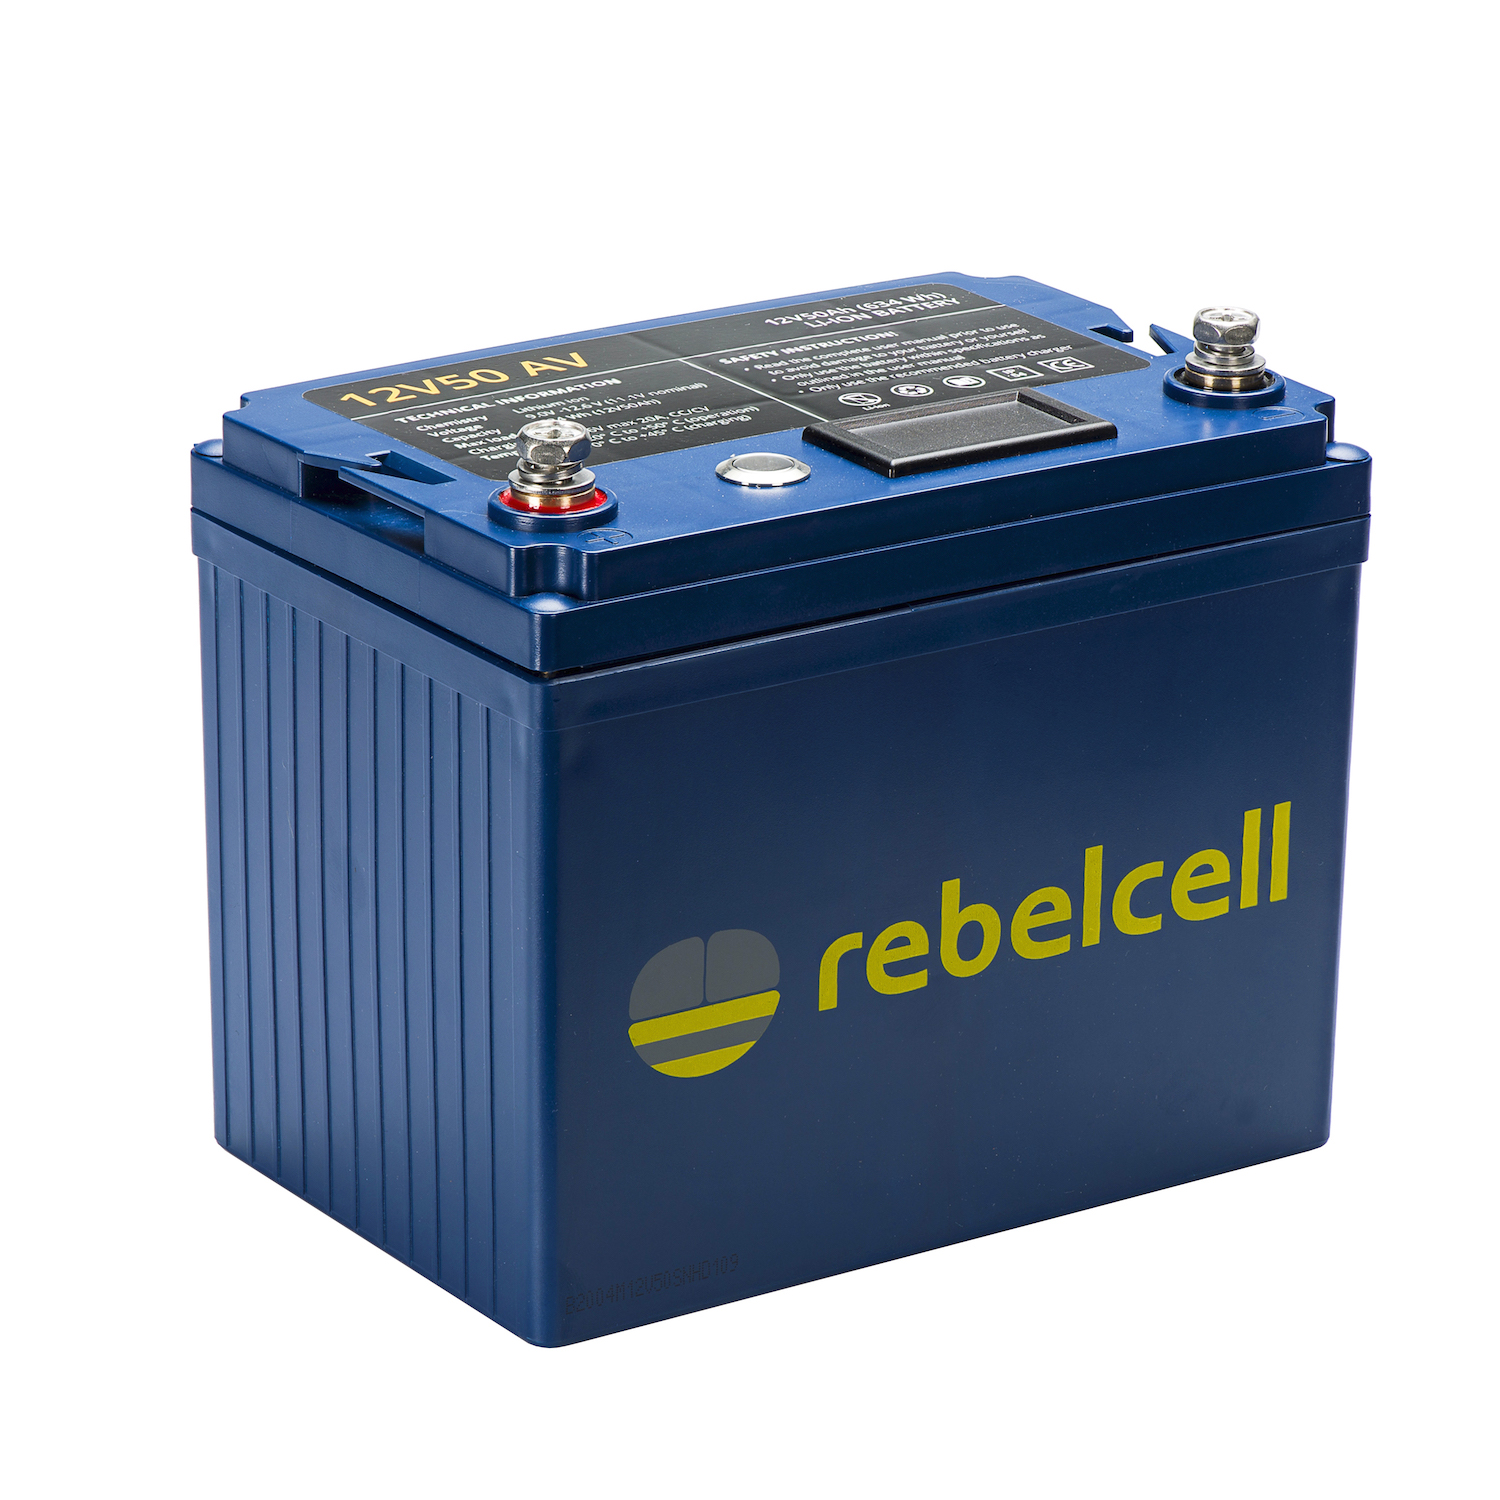 getrouwd Nuchter Koloniaal 12 volt 50Ah Lithium accu | Rebelcell | Portable energie voor buiten